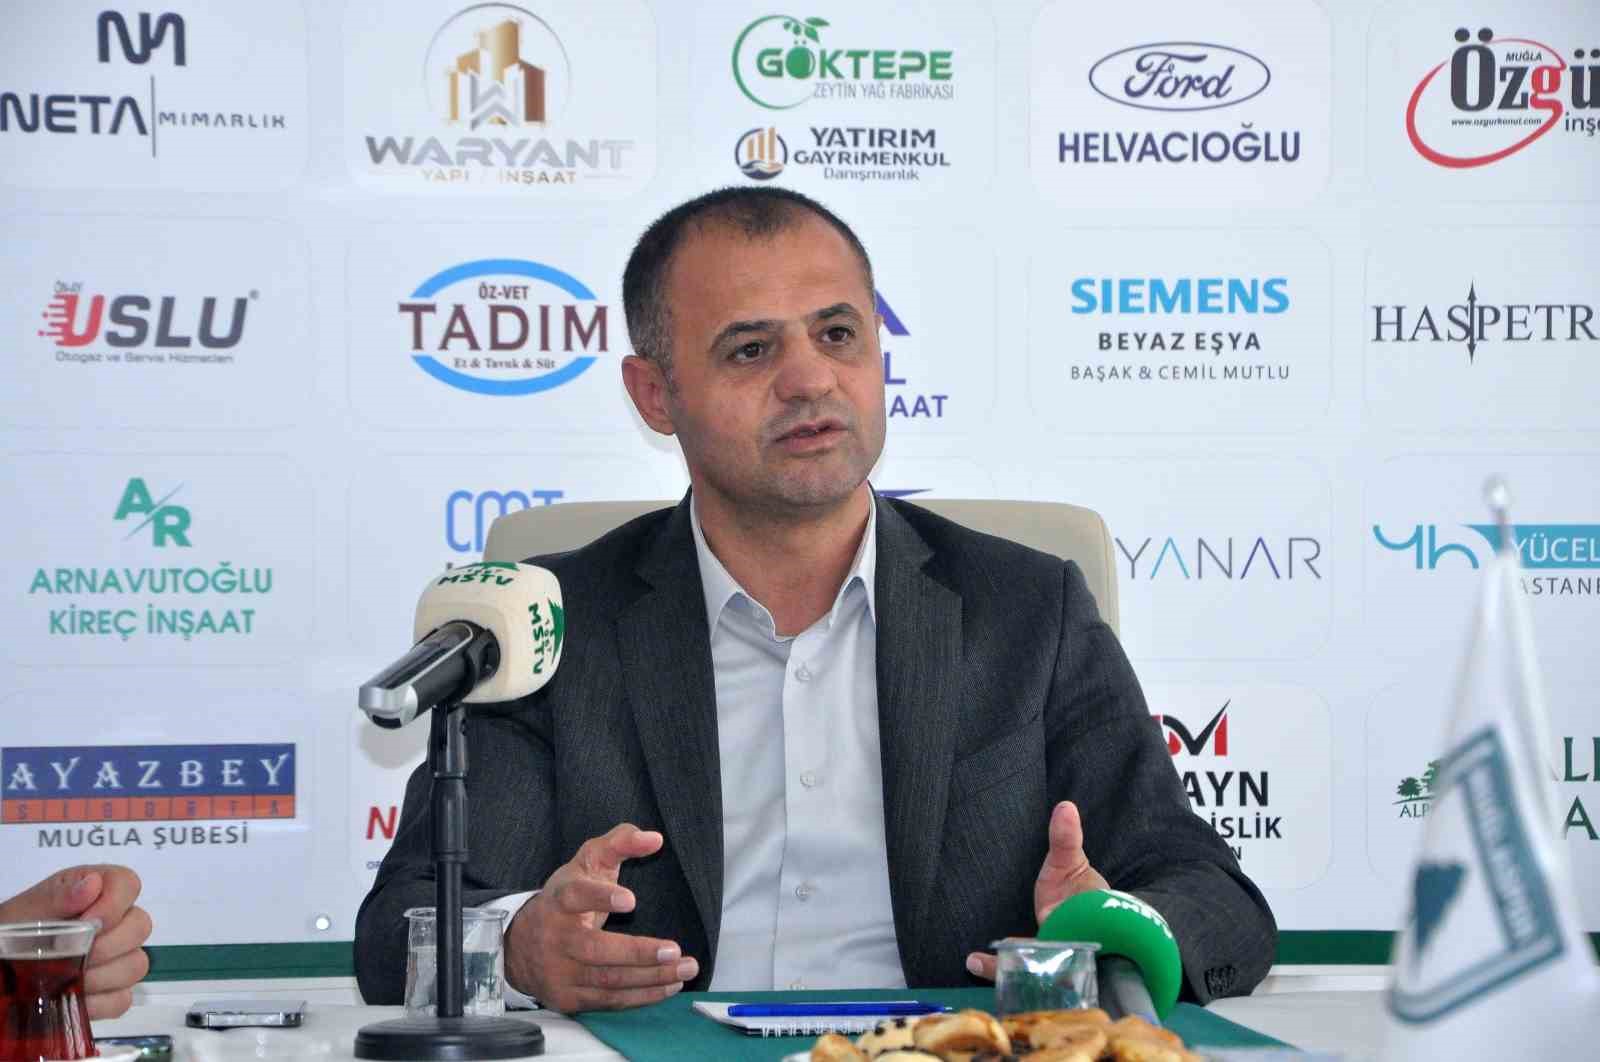 Muğlaspor Başkanı Kıyanç” Şampiyonluğa giderken şehri harekete geçirmeliyiz”
